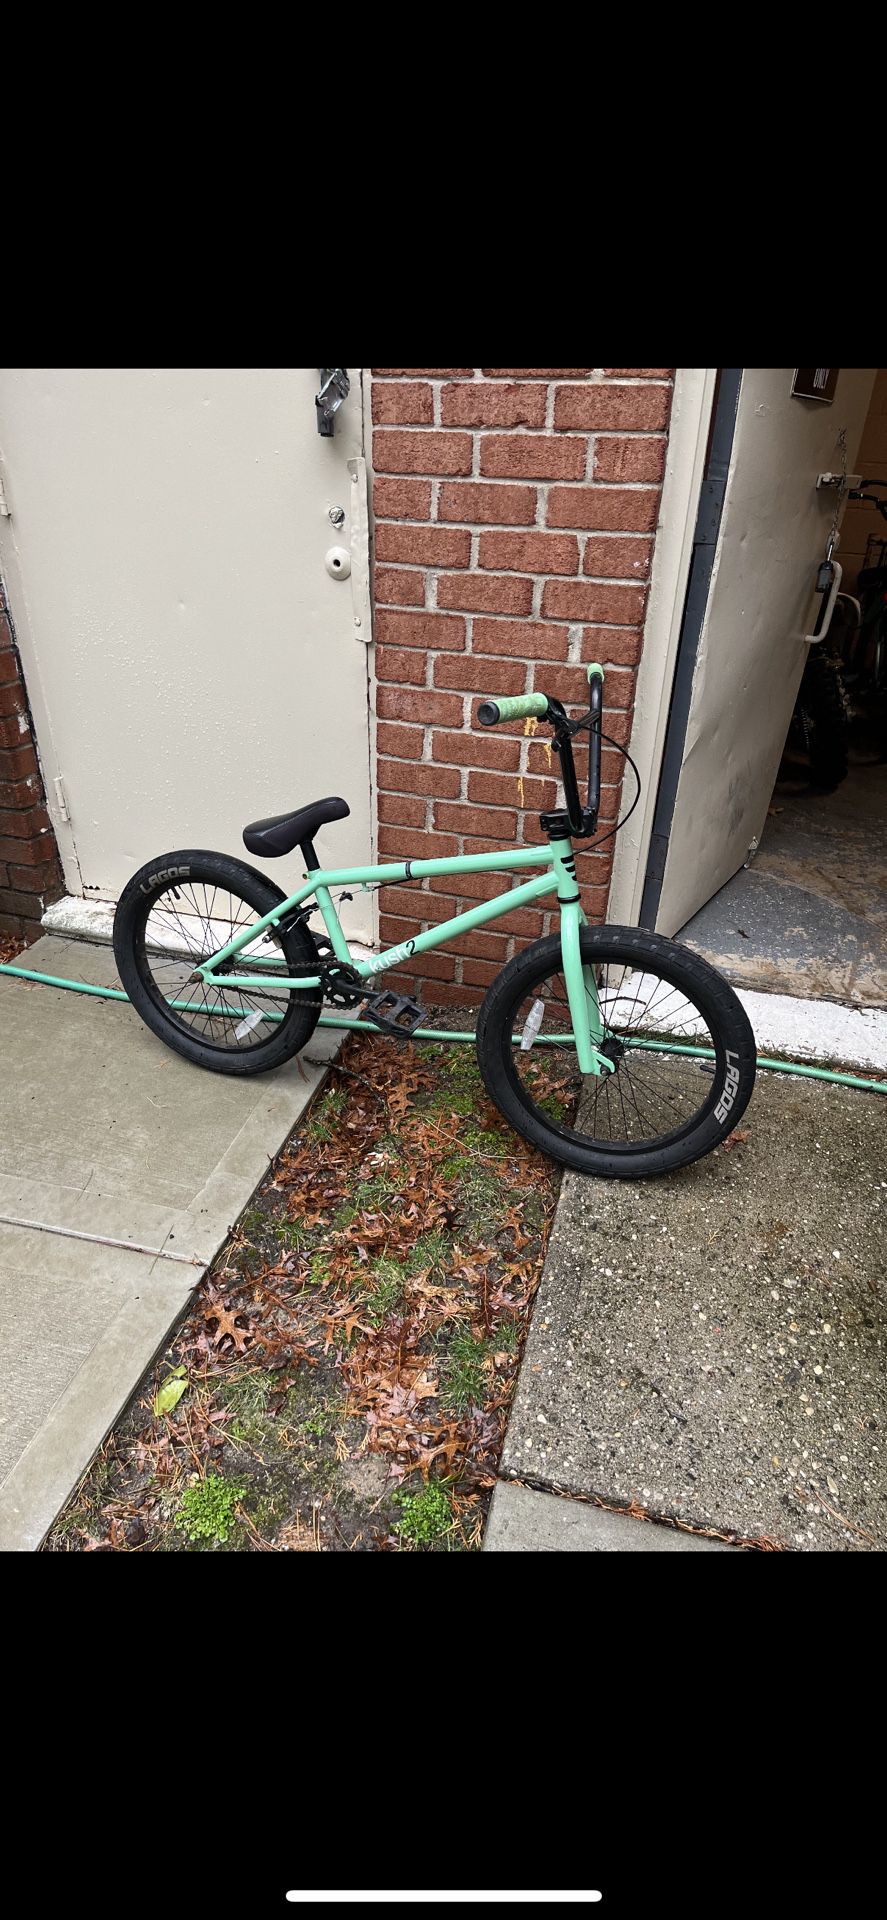 Clean Mafia Kush 2 complete BMX bike